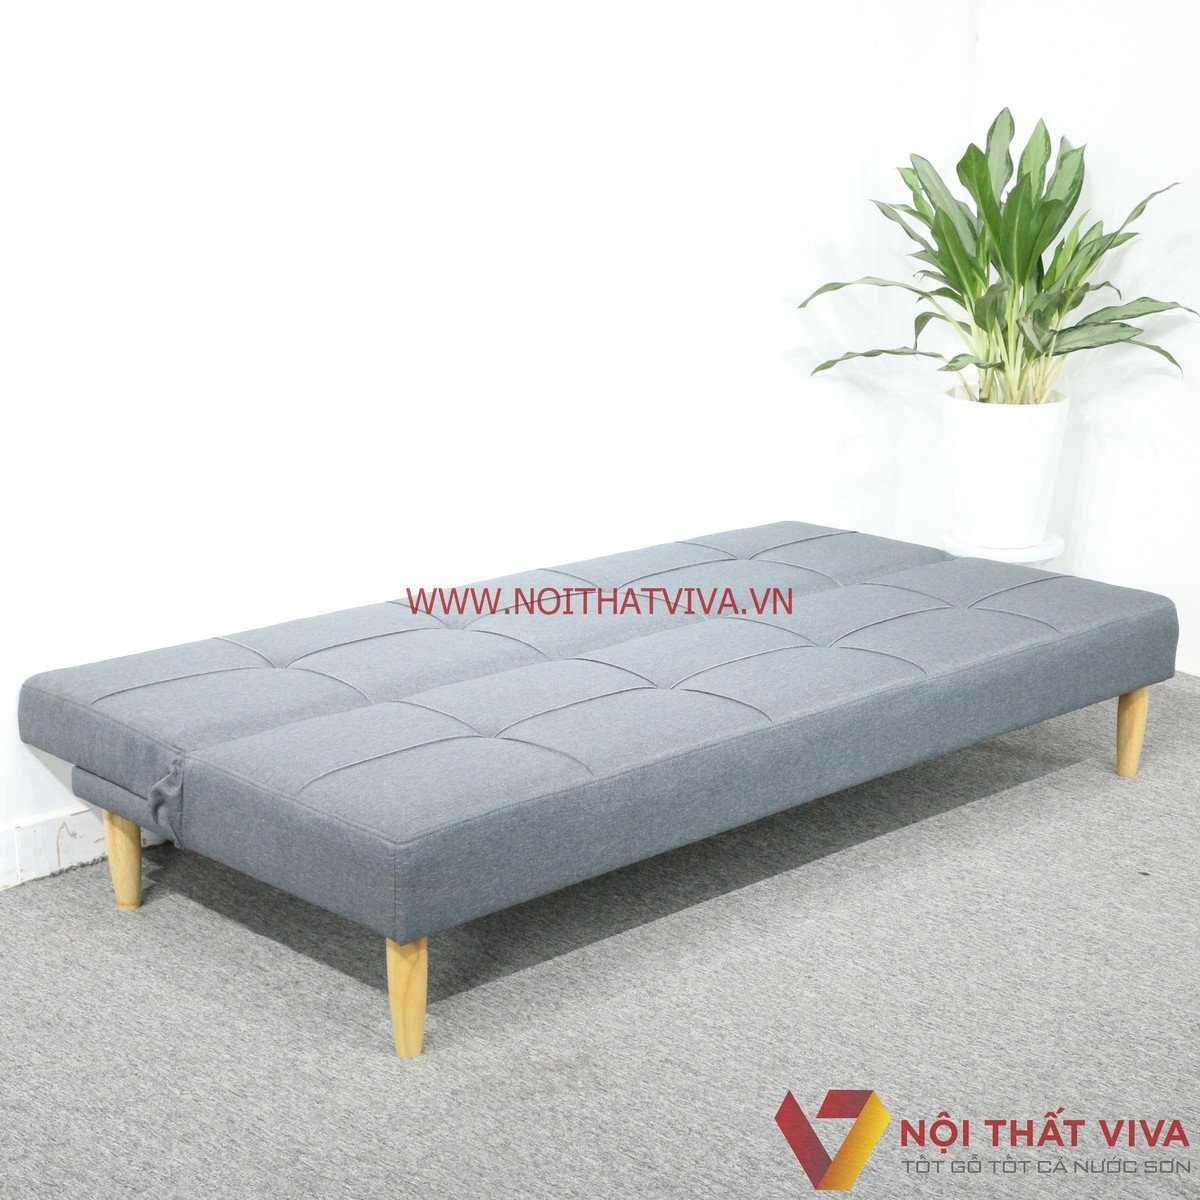 Ấn Tượng Loạt Mẫu Sofa Bed Giá Rẻ HCM Đẹp, Bền, Được Yêu Thích Nhất